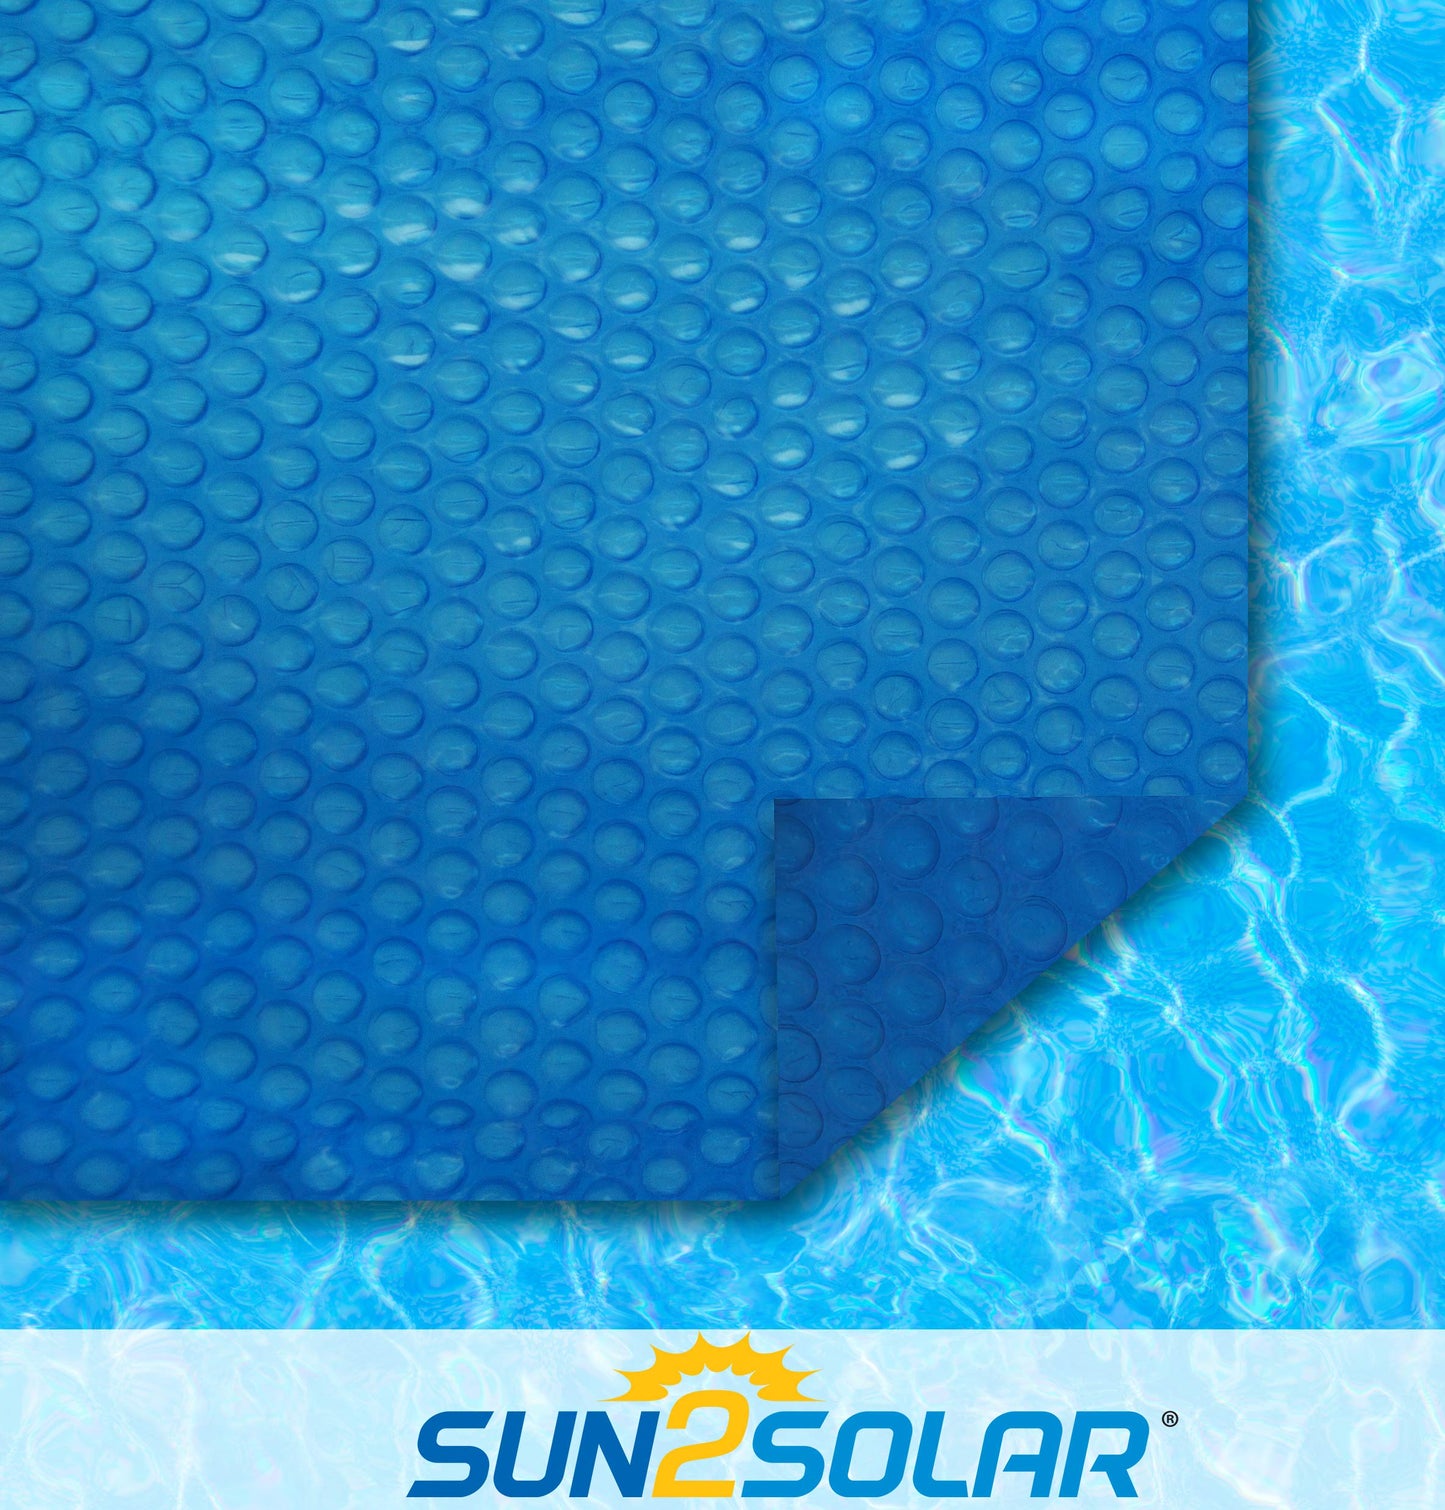 Sun2Solar Bleu Couverture solaire ronde de 33 pieds | Style série 1200